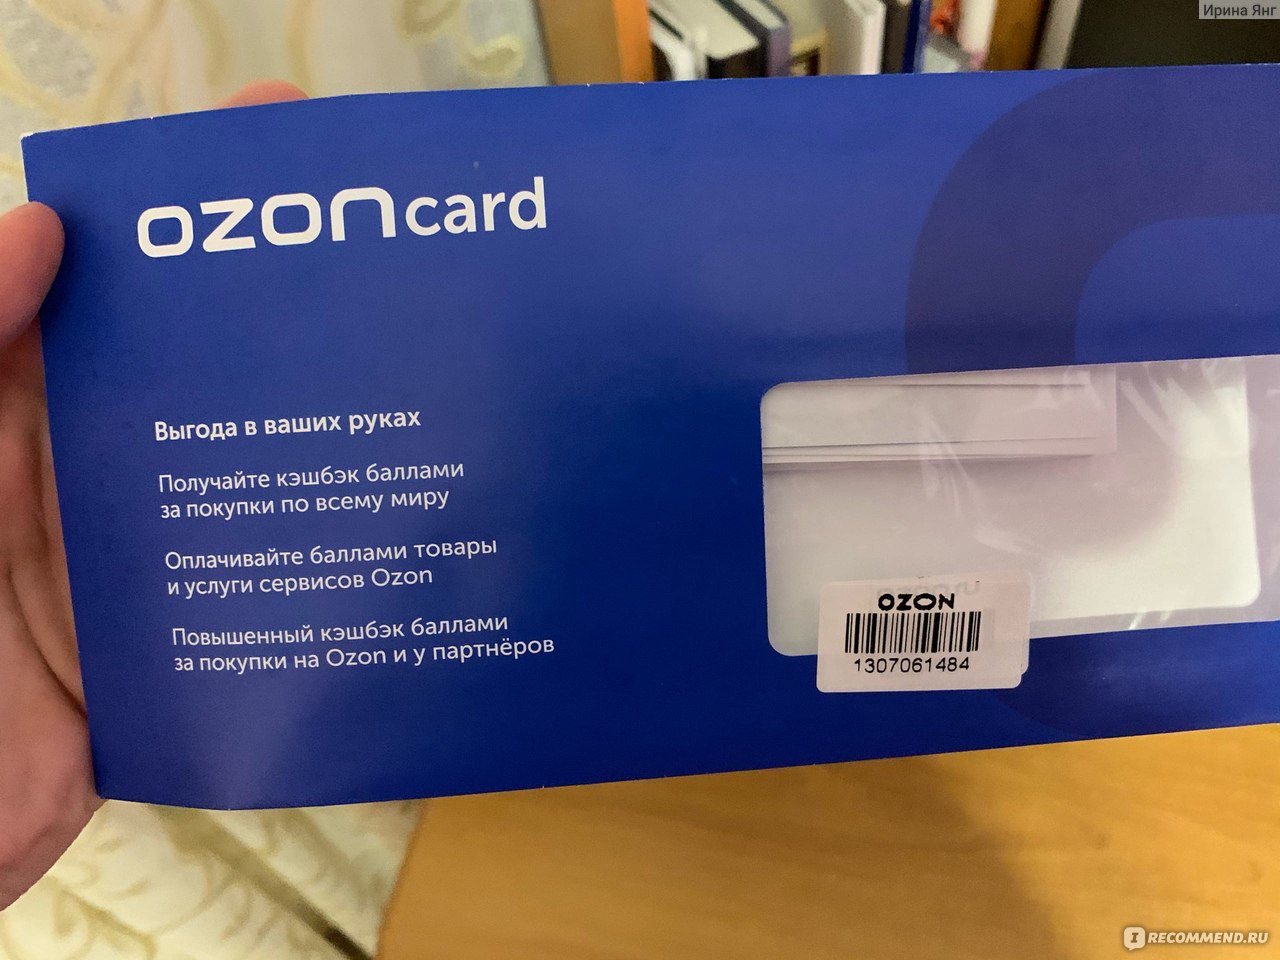 Карточка озон пиксели. Озон кард. Карта Ozone. OZON банк. OZON Card штрих код.